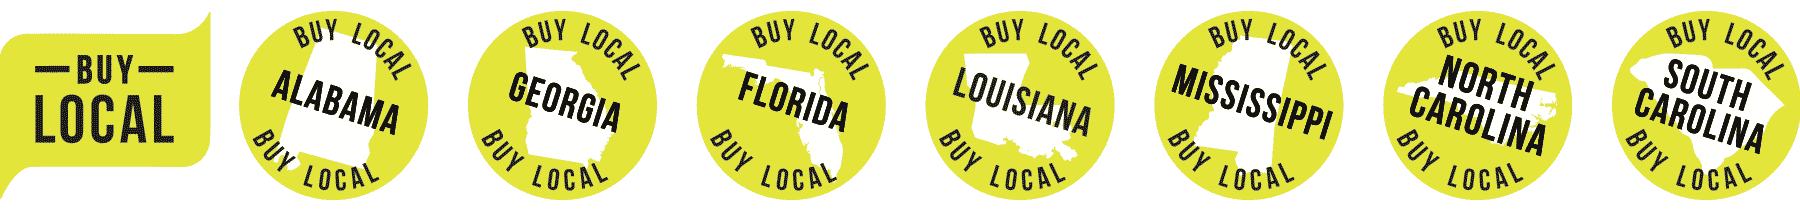 Buy Locally in Alabama, Georgia, Florida, Louisiana, Mississippi, North Carolina, and South Carolina